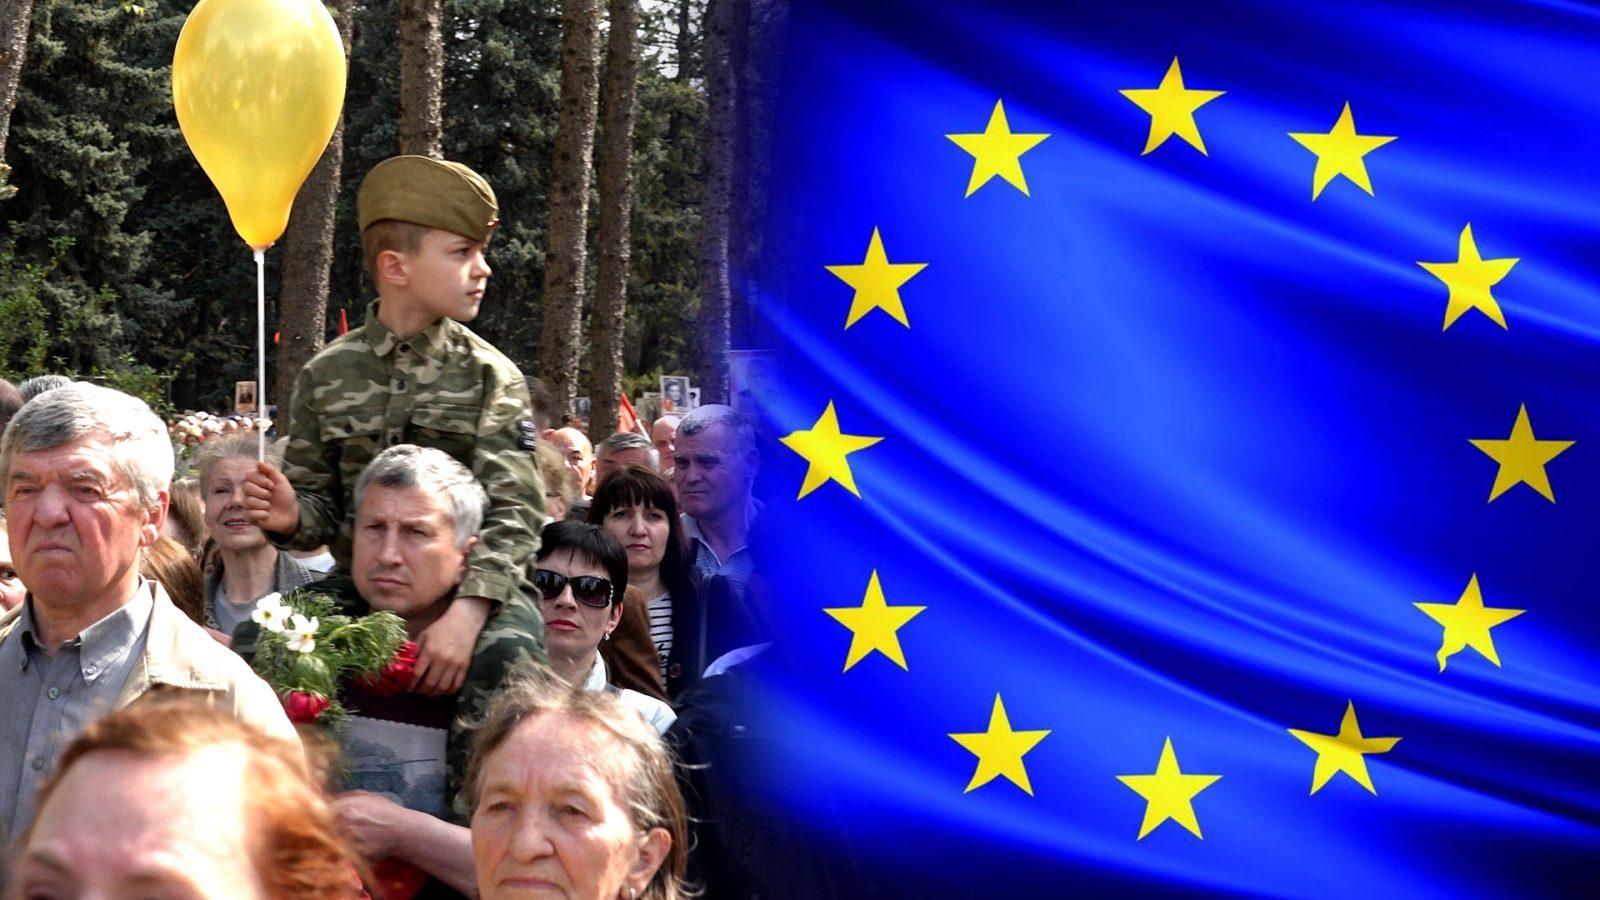 /VIDEO/ Ziua Europei sau Ziua Victoriei? Ce sărbătoresc locuitorii din nordul țării pe 9 mai